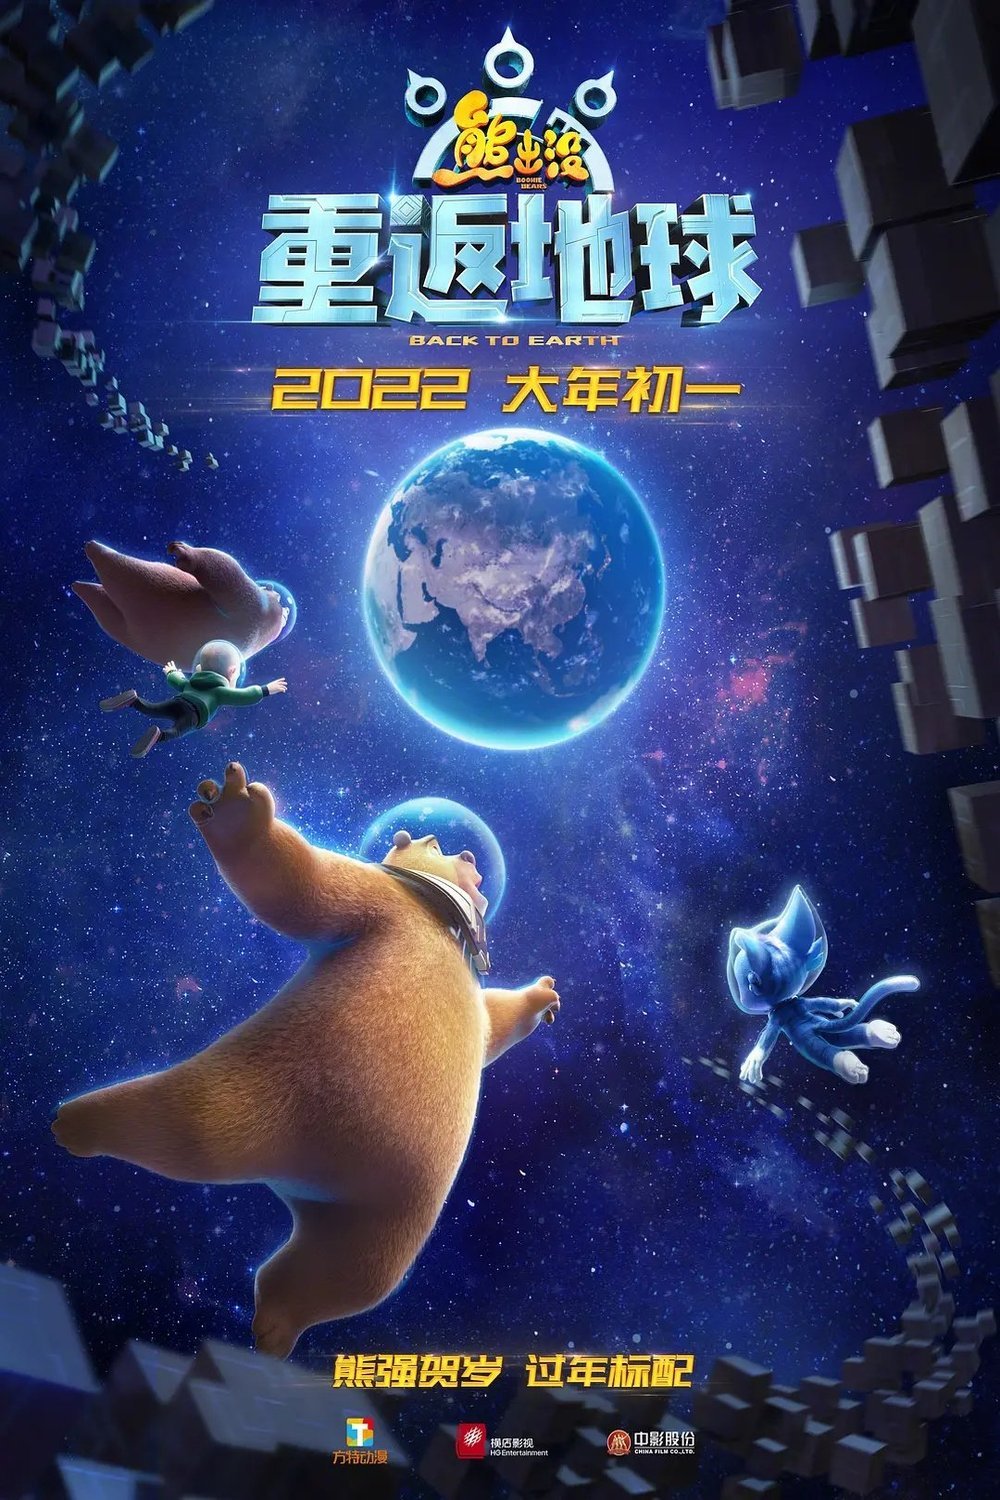 L'affiche originale du film Xiong chu mo: Chong fan di qiu en mandarin